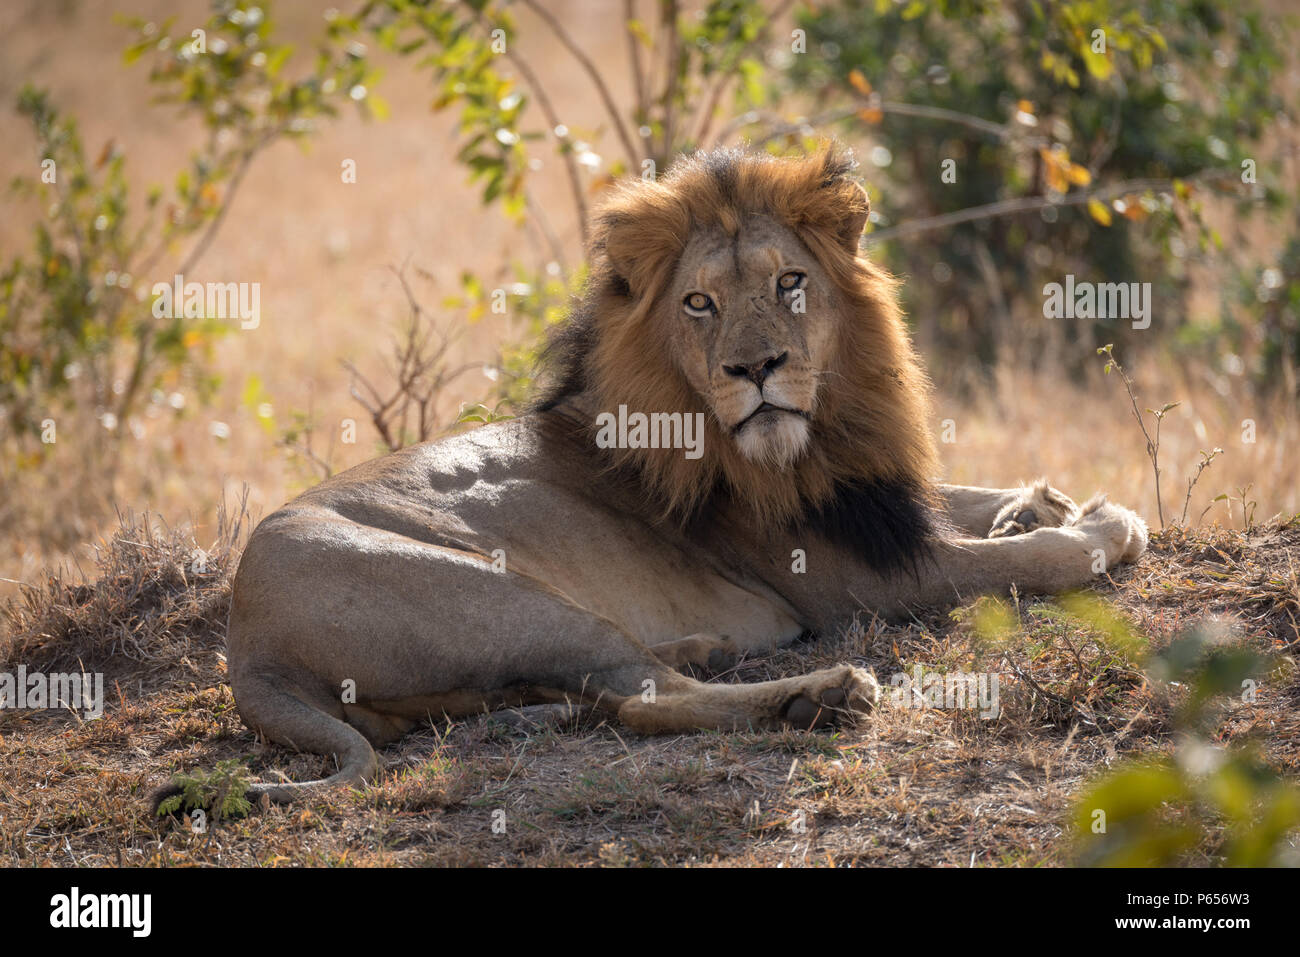 Male lion basking in morning sunlight Stock Photo